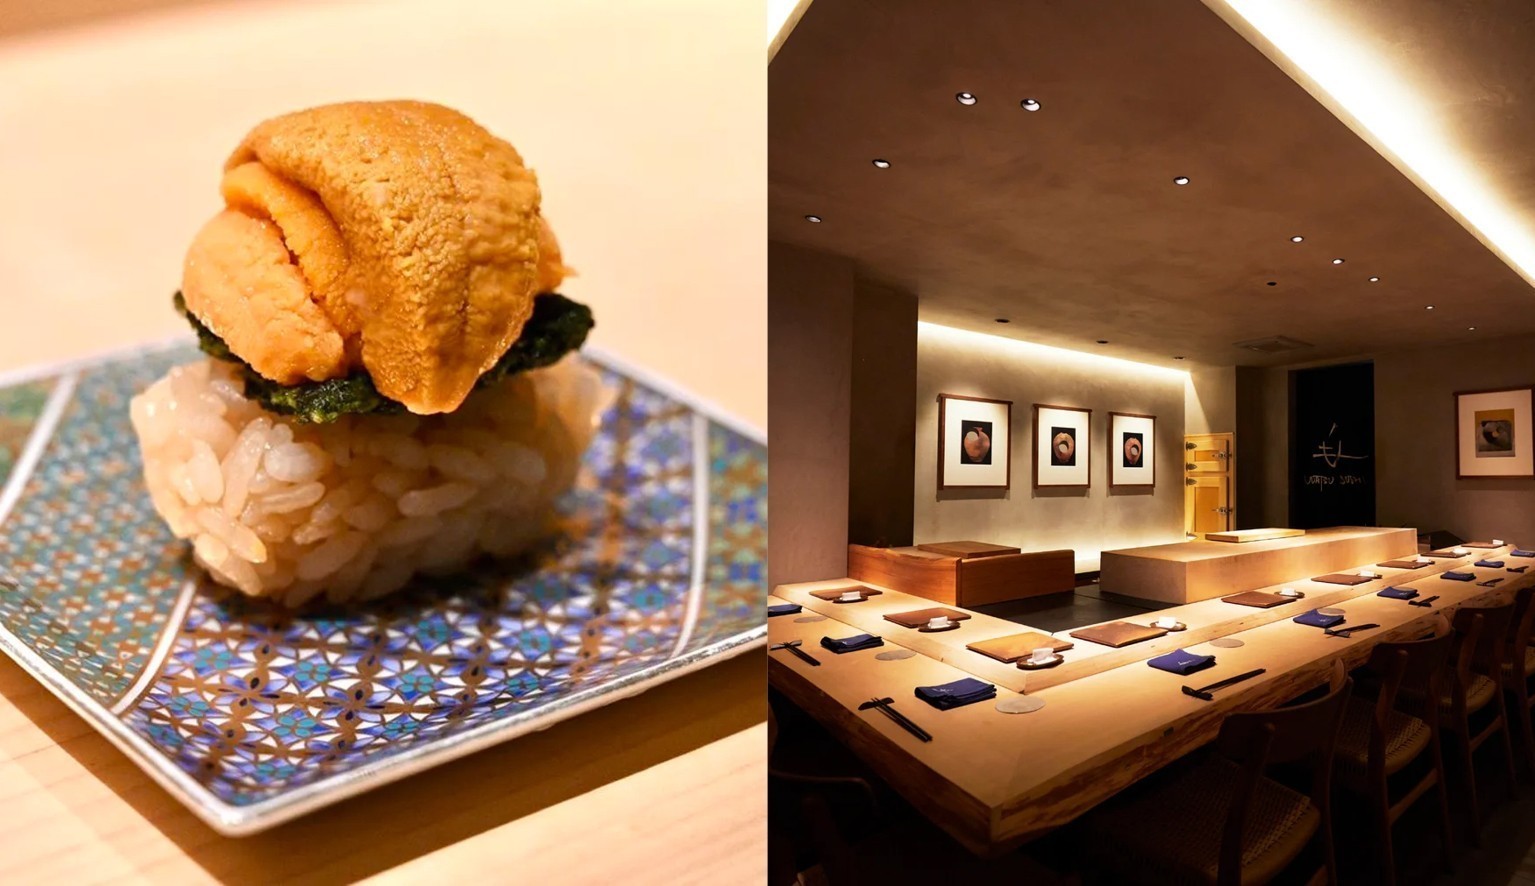 Τόκυο: Παγκόσμια γαστρονομική πρωτεύουσα με 200 εστιατόρια και σύνολο 263 αστέρια Michelin